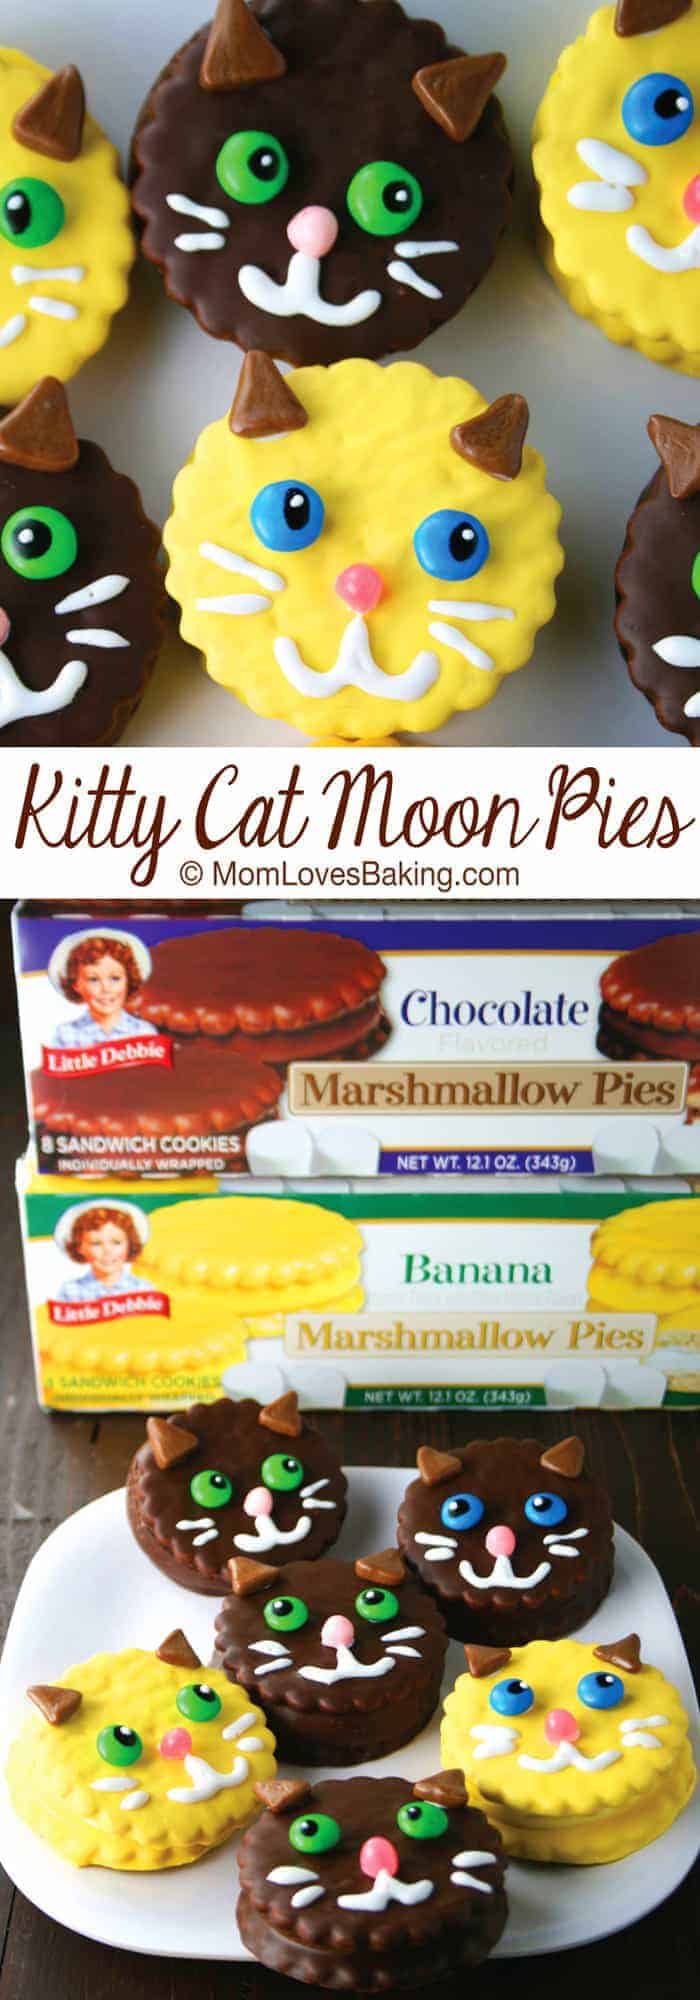 Kitty Cat Moon Pies